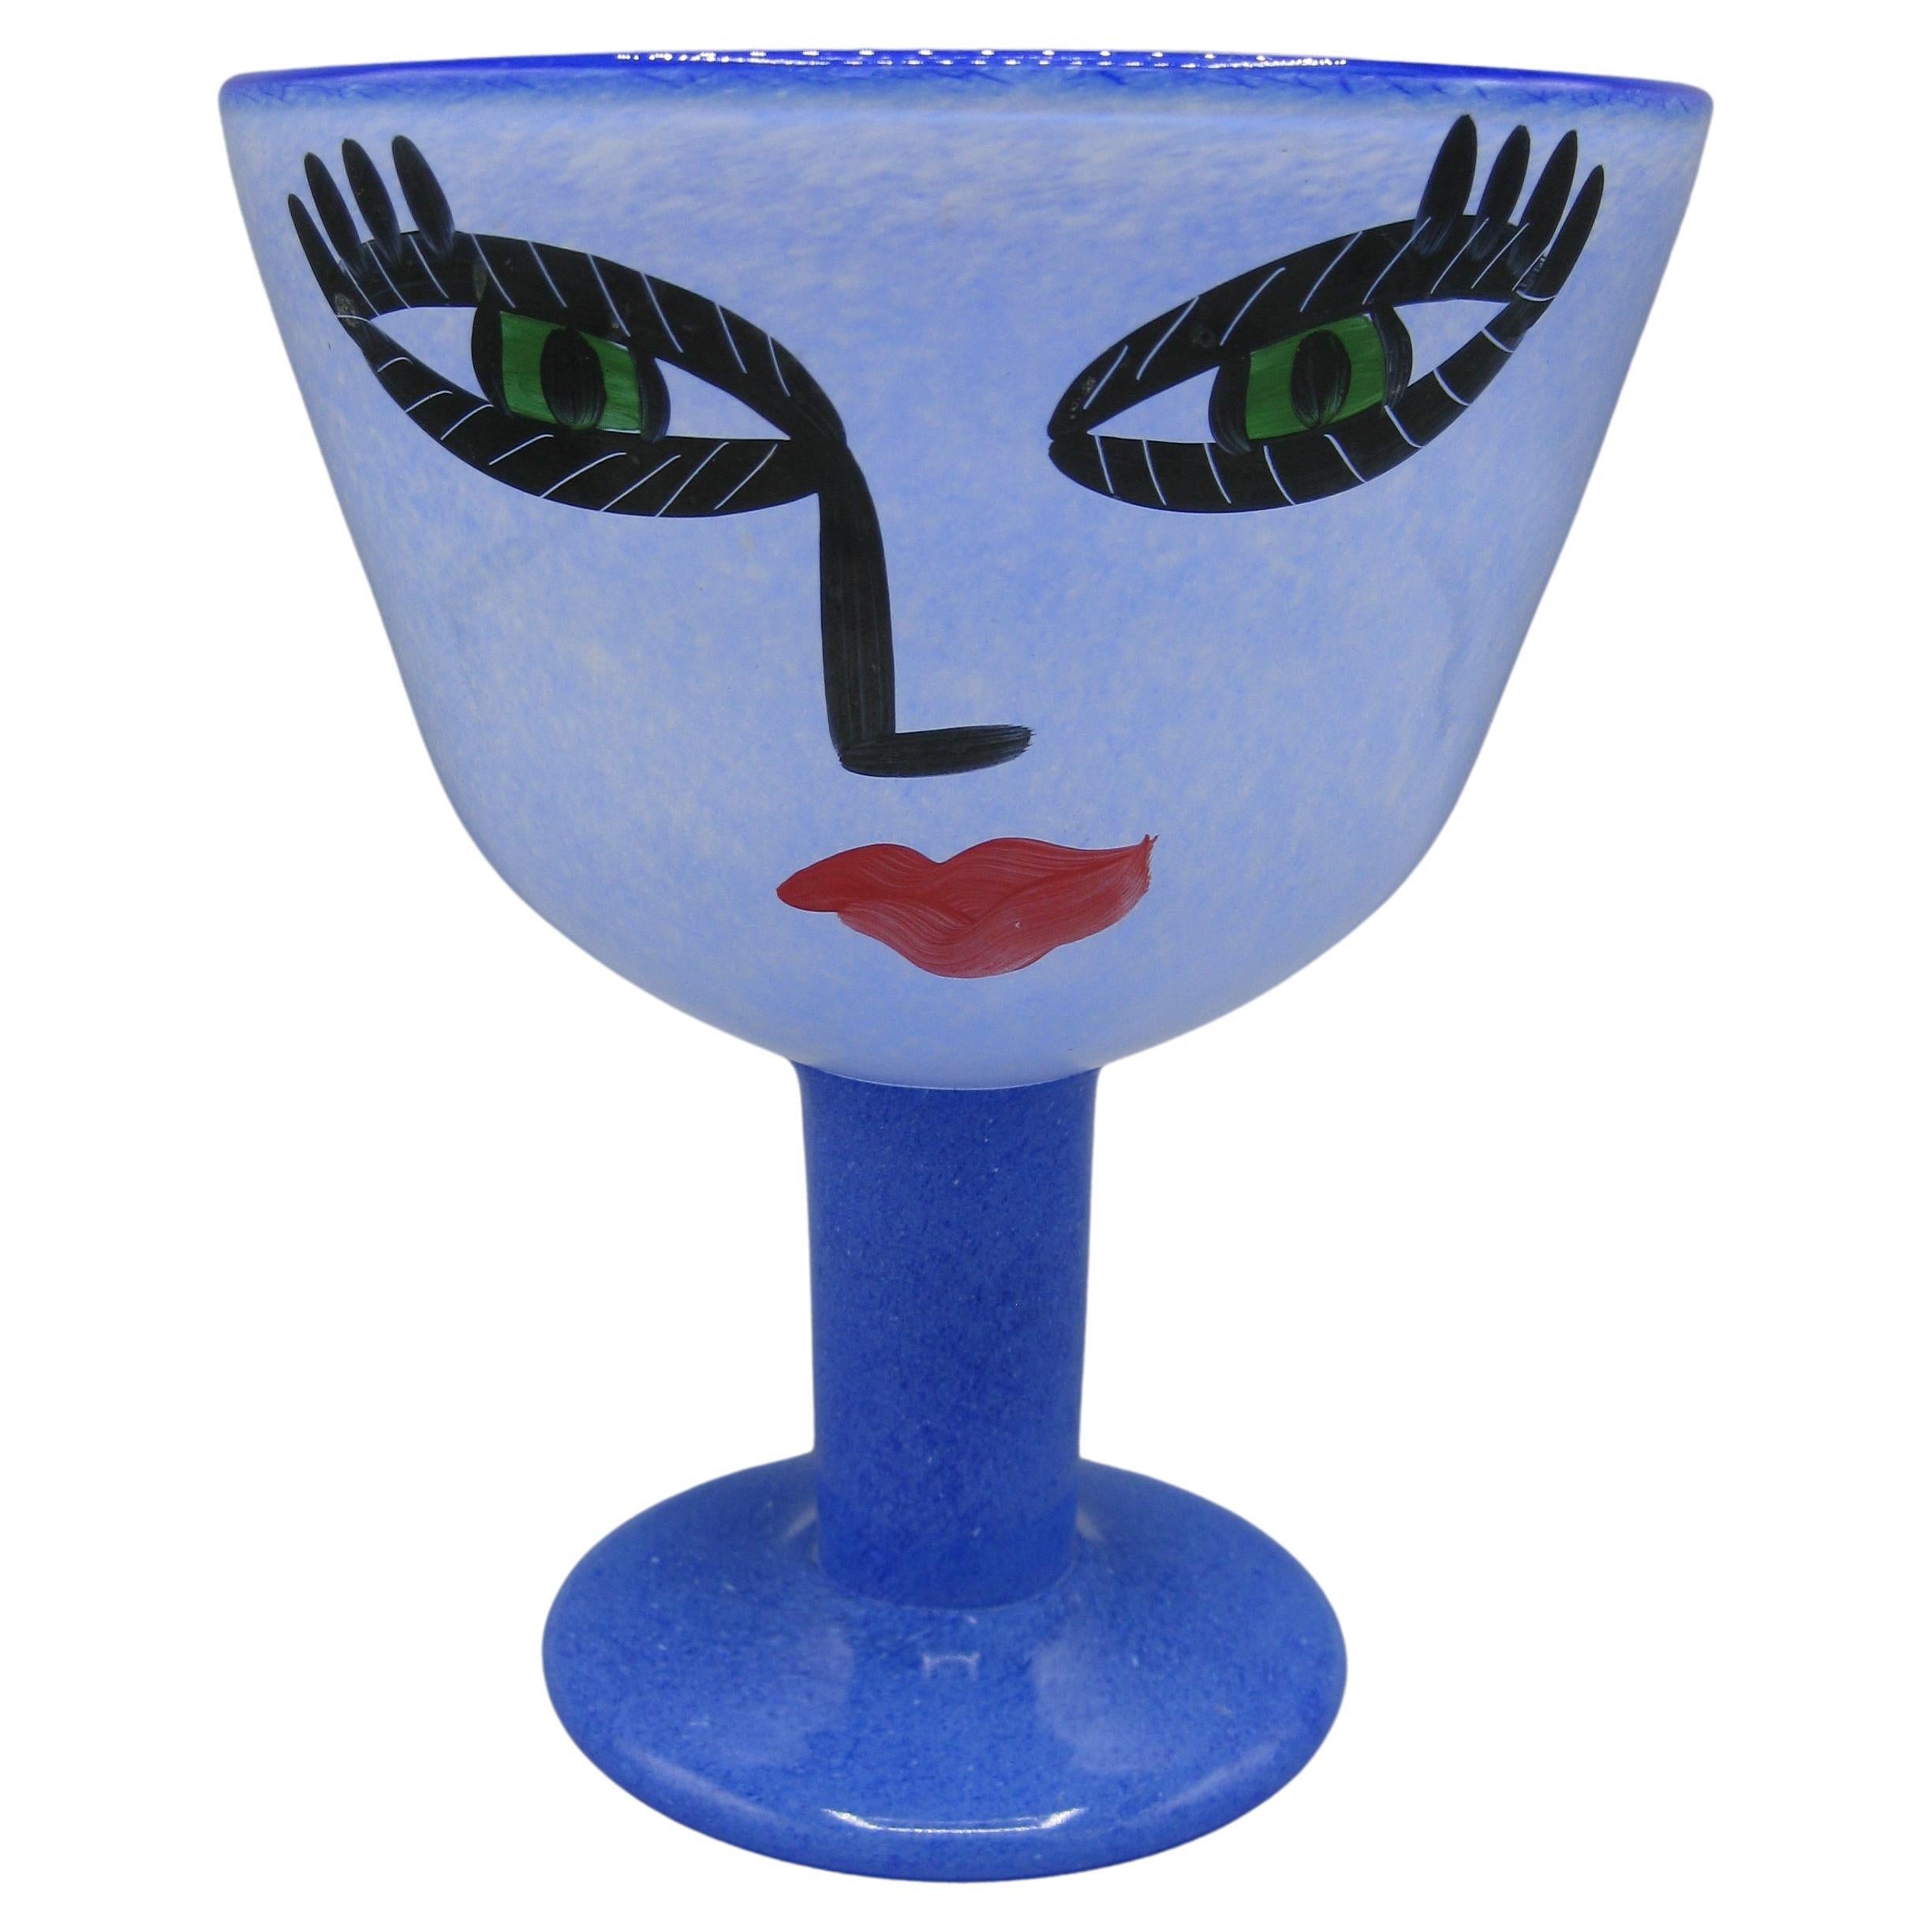 Ulrica Hydman-Vallien "Open Minds" Kosta Boda Kunstglasschale Vase mit großem Gesicht